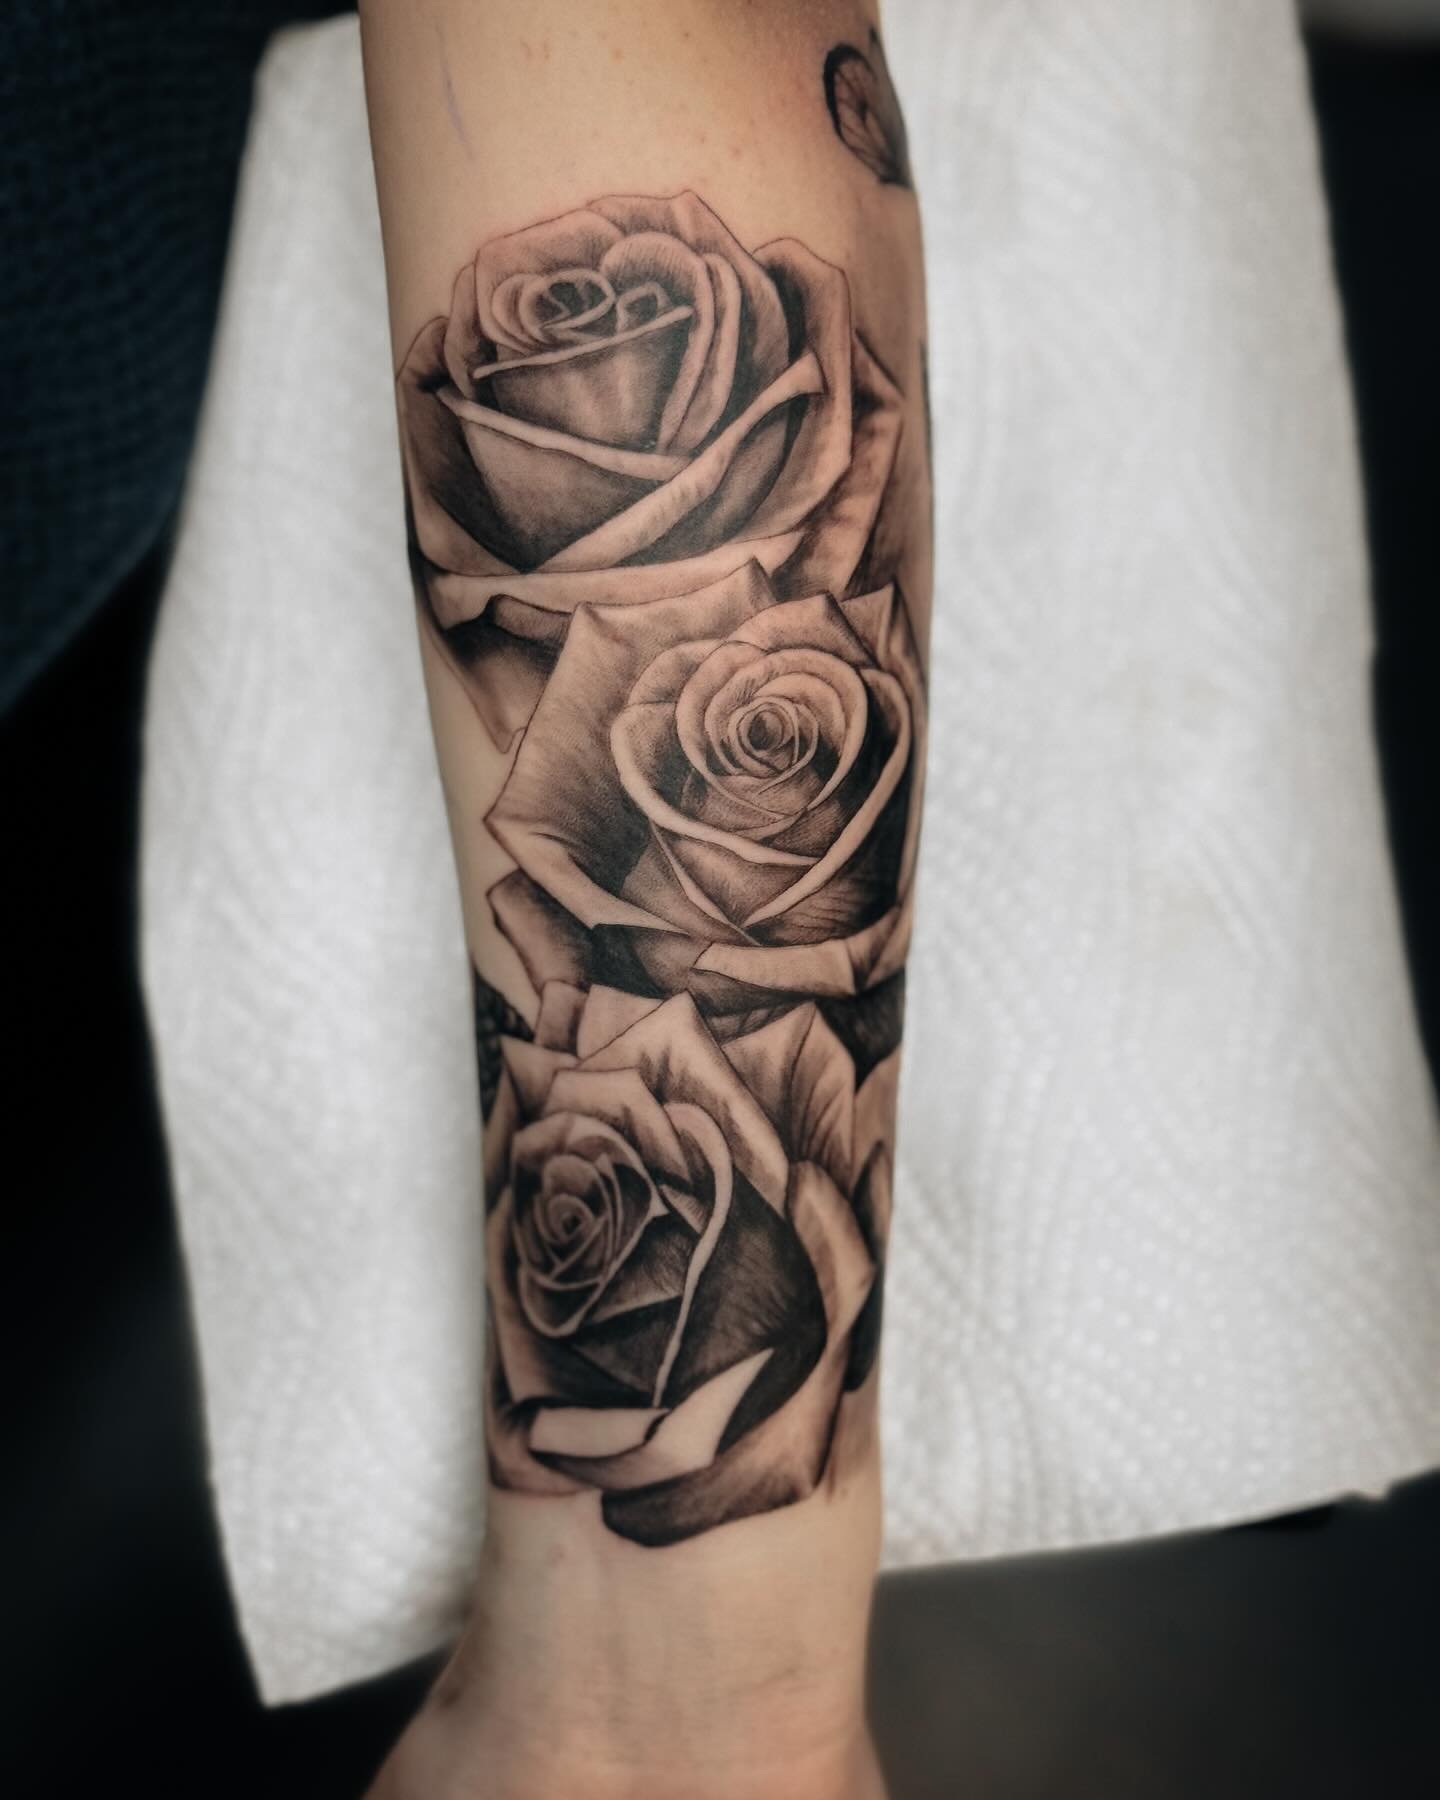 Roses 🥀
.
.
.
.
.
#tattoo #tattoos #tattooartist #photooftheday #illustration #tattooed #tattooideas #rosetattoo #birsfelden #basel #studio #switzerland #tattooing #tattoed #tattooformen  #thirtyfourtattoo #clocktattoo #floraltattoo #rosetattoo